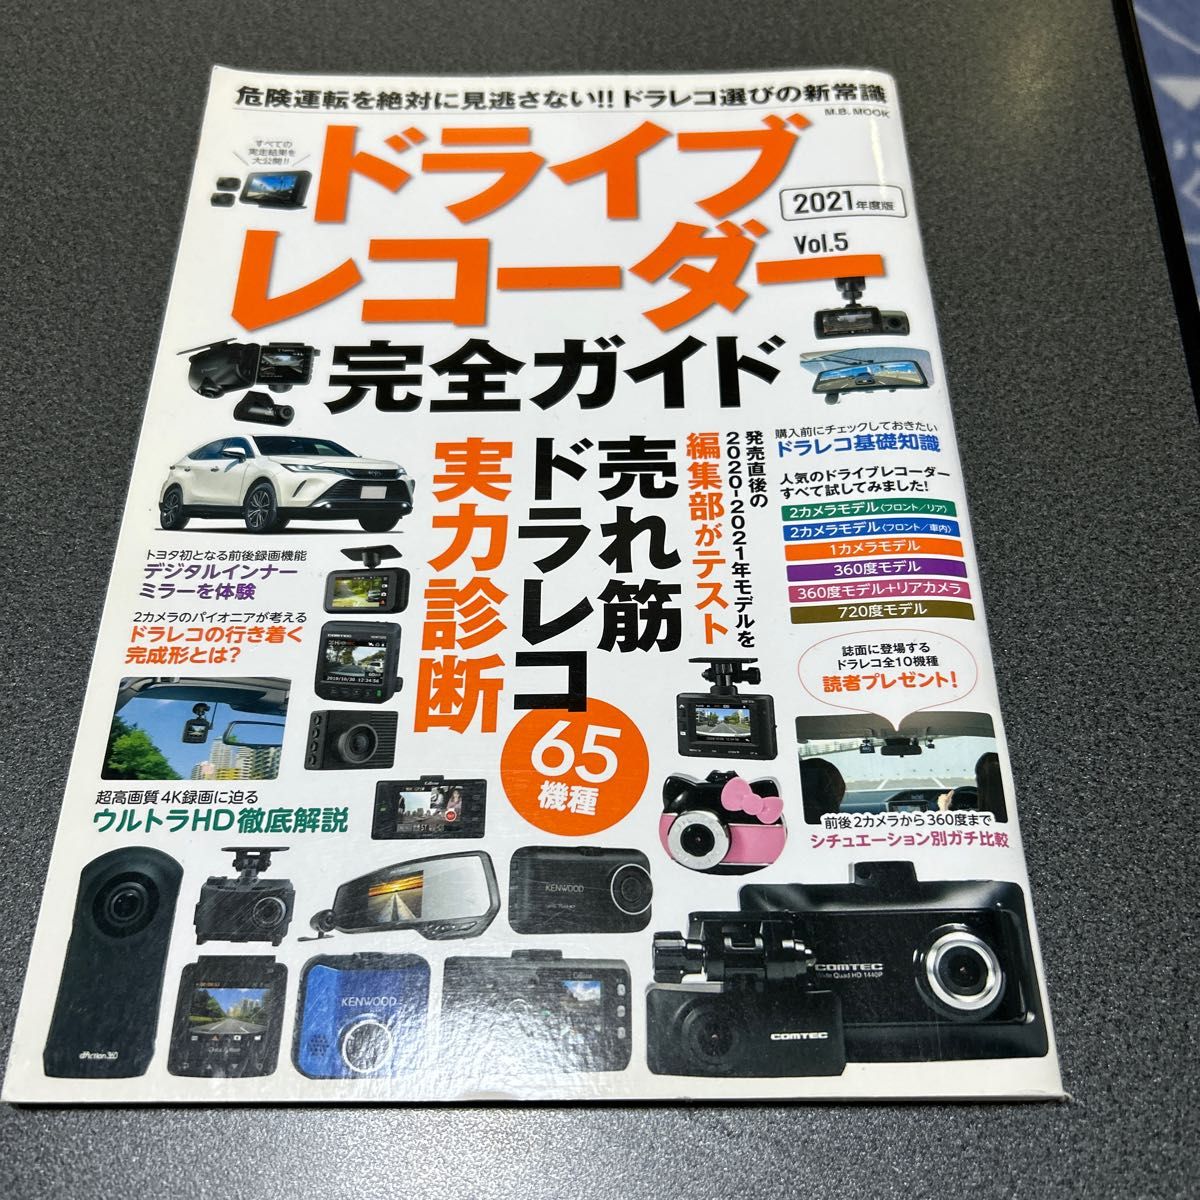 ドライブレコーダー完全ガイド Vol.5 (2021年度版)